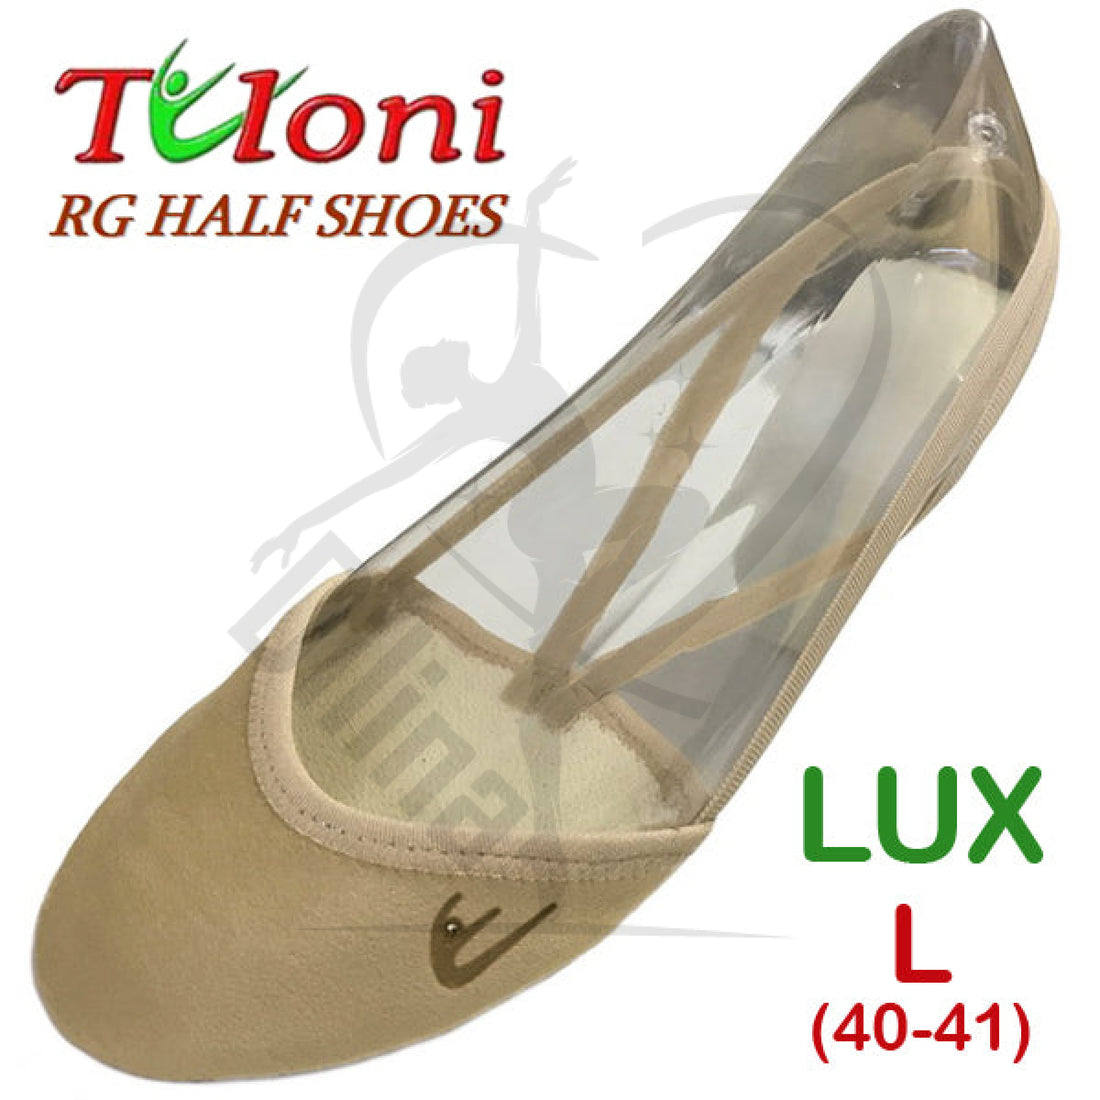 Tuloni Half Shoes Mod. Lux L (40-41) Shoes